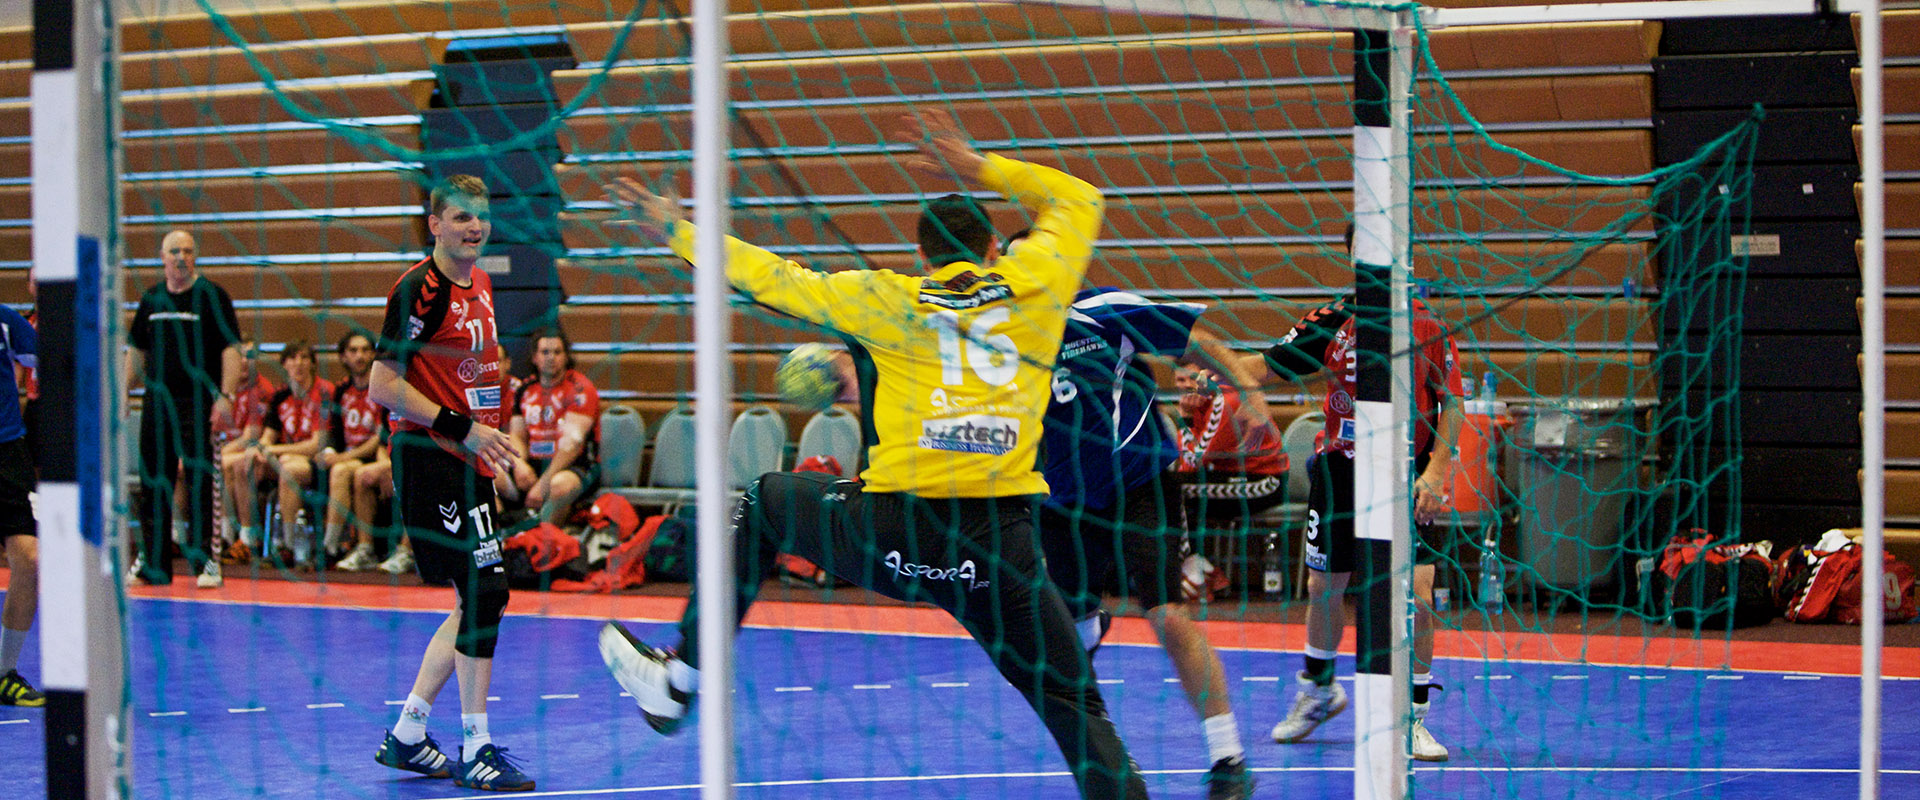 Commercial | Handball Courts Handball Team